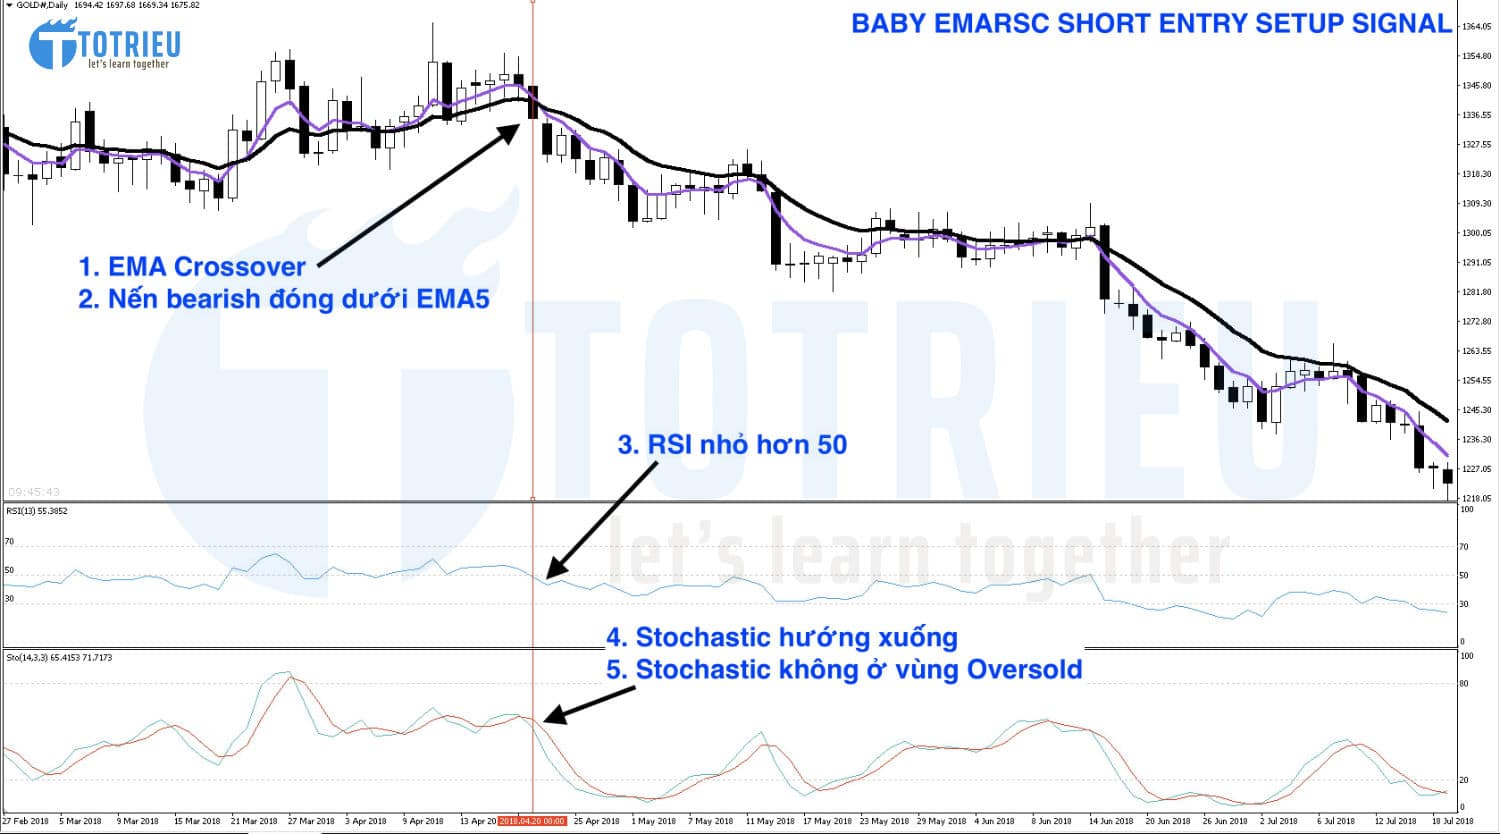 Hướng dẫn tìm tín hiệu Short - Sell theo hệ thống giao dịch BABY EMARSC